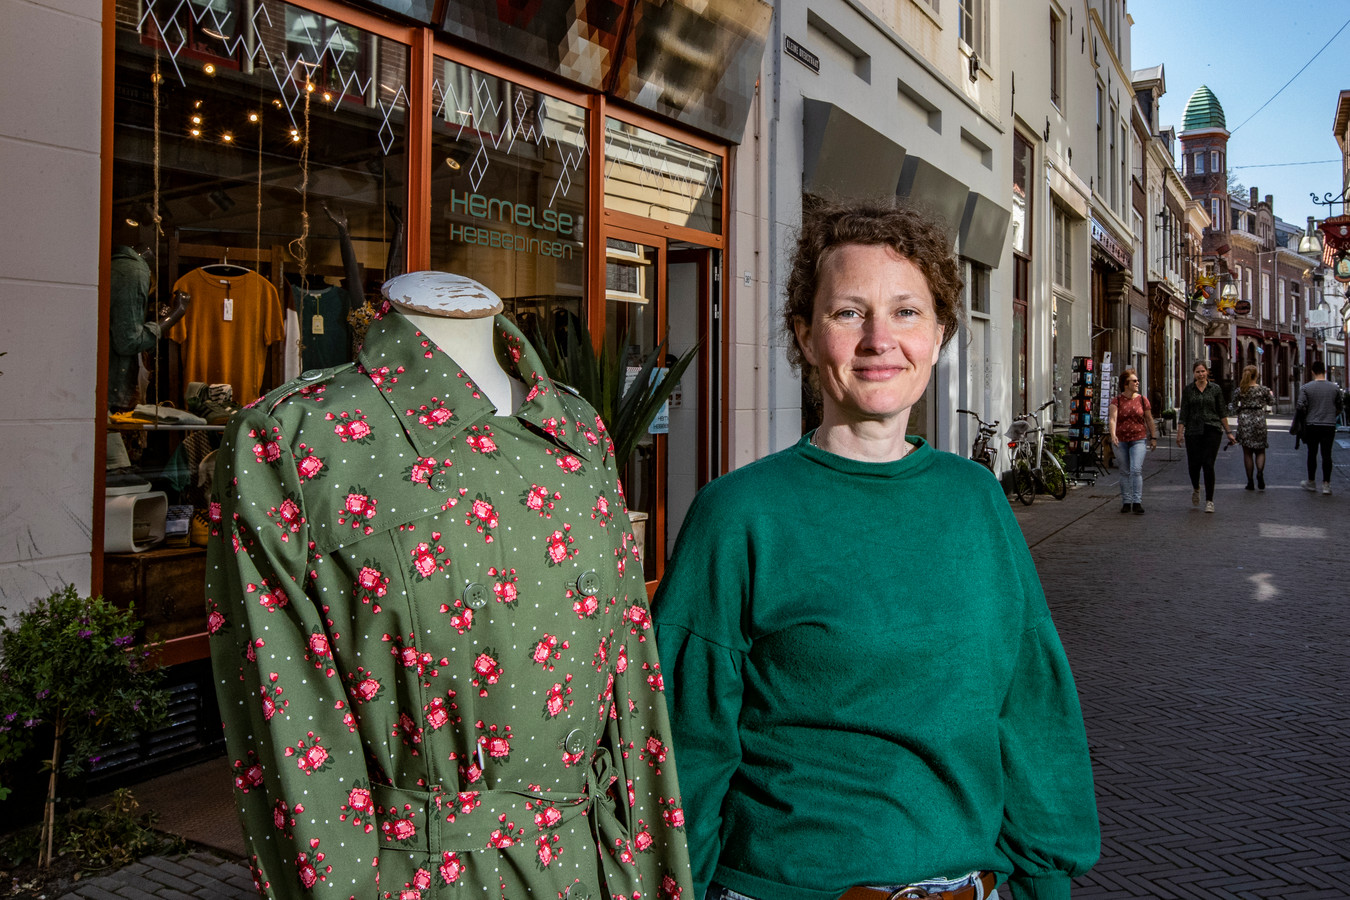 Bianca Nolle van Hemelse Hebbedingen verkoopt vooral biologische kleding en wat woonaccessoires.